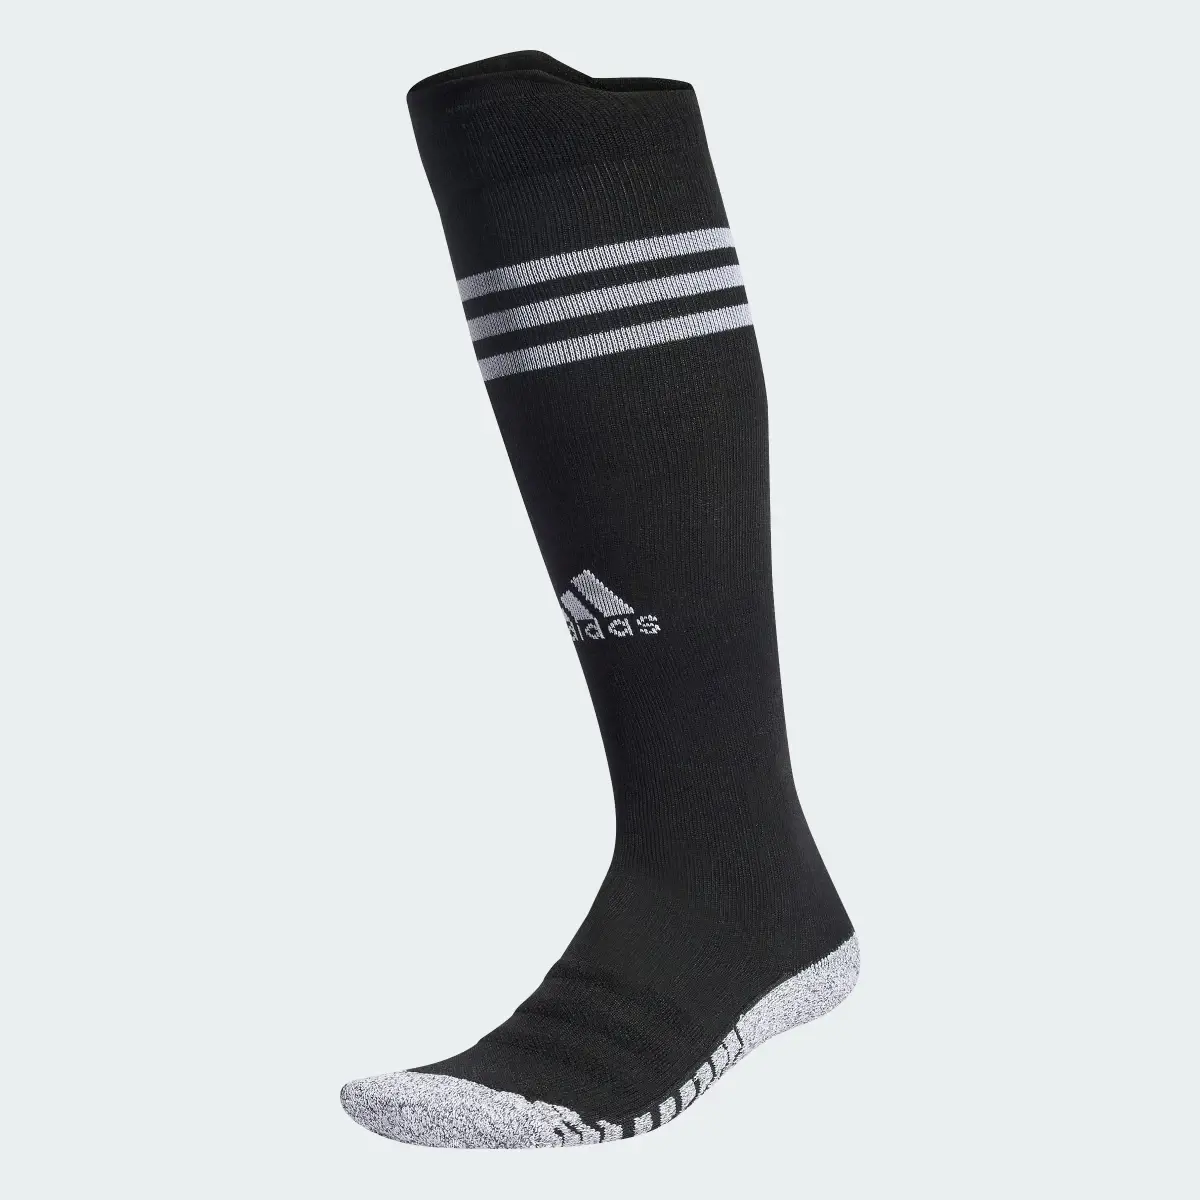 Adidas All Blacks Rugby Knee Socks. 1